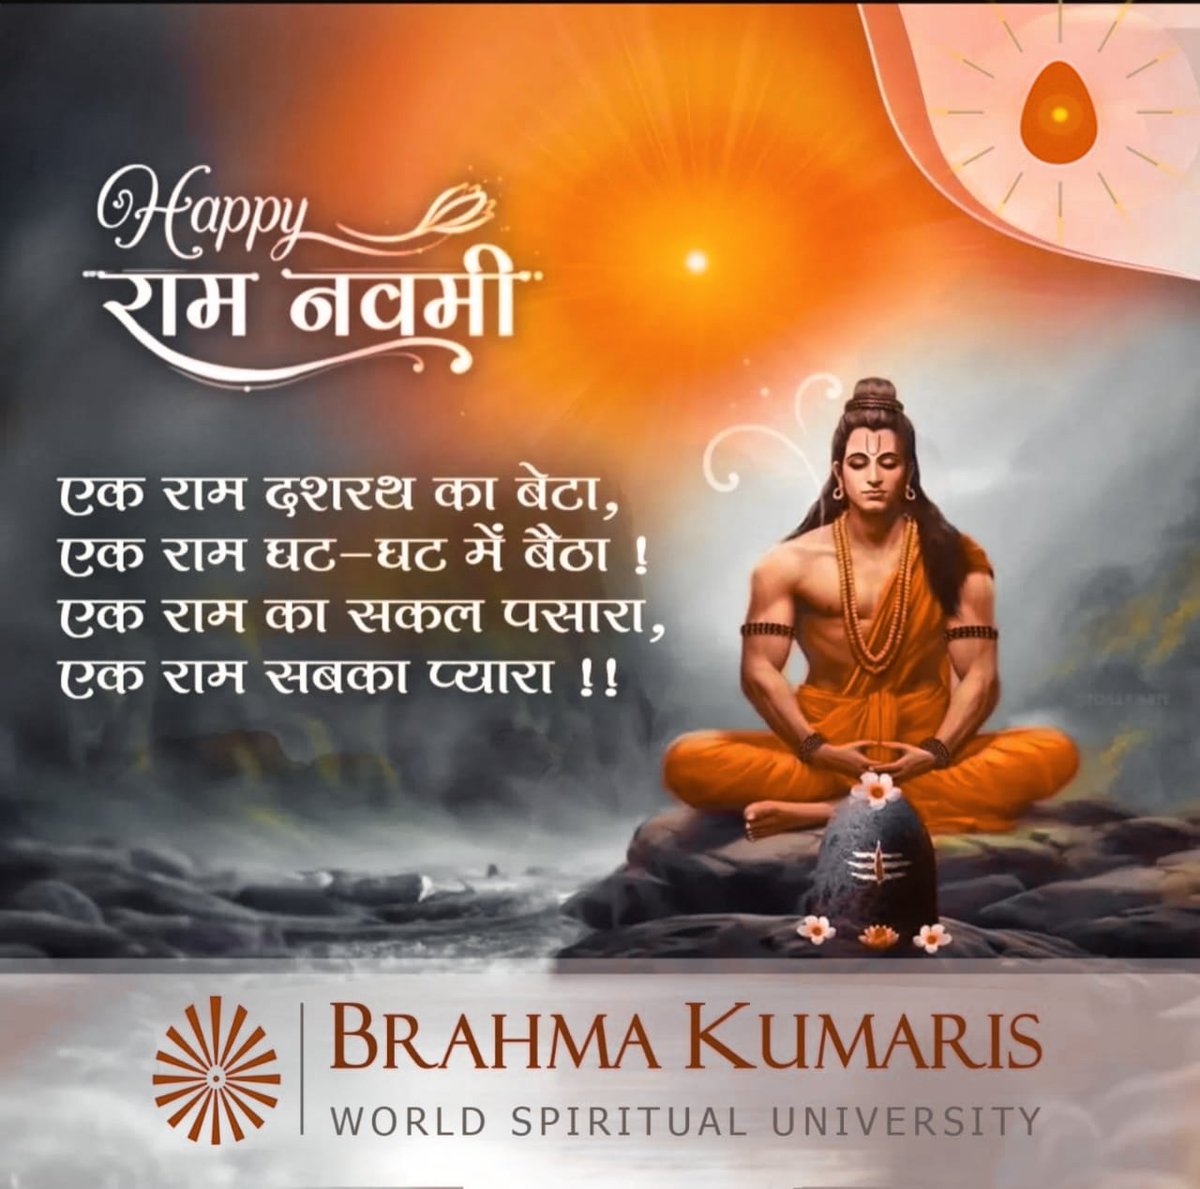 रामनवमी की बहुत-बहुत बधाई एवं हार्दिक शुभकामनाएँ। 🧡🧡🚩🚩 भगवान राम सभी का कल्याण करें और सभी की मनोकामनाएं पूर्ण करें.. 🙏 **जय श्री राम..** 🌹🪷🌻🌻🪷🌹